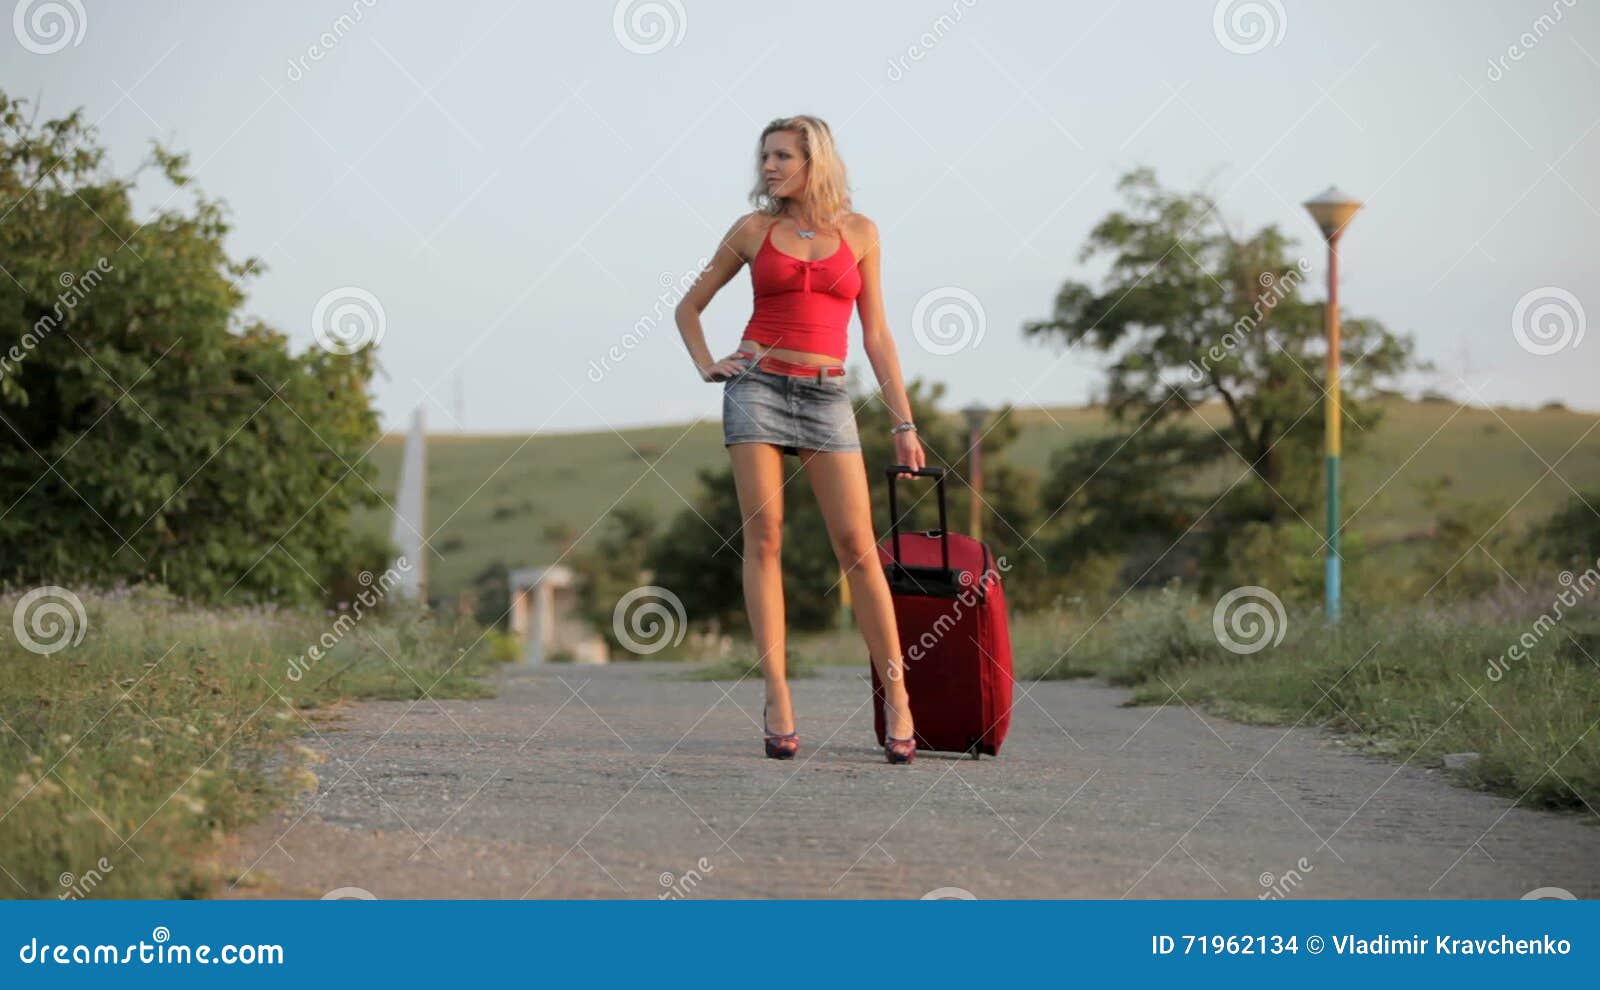 Leggy temptress in short skirt walking on the sidewalk